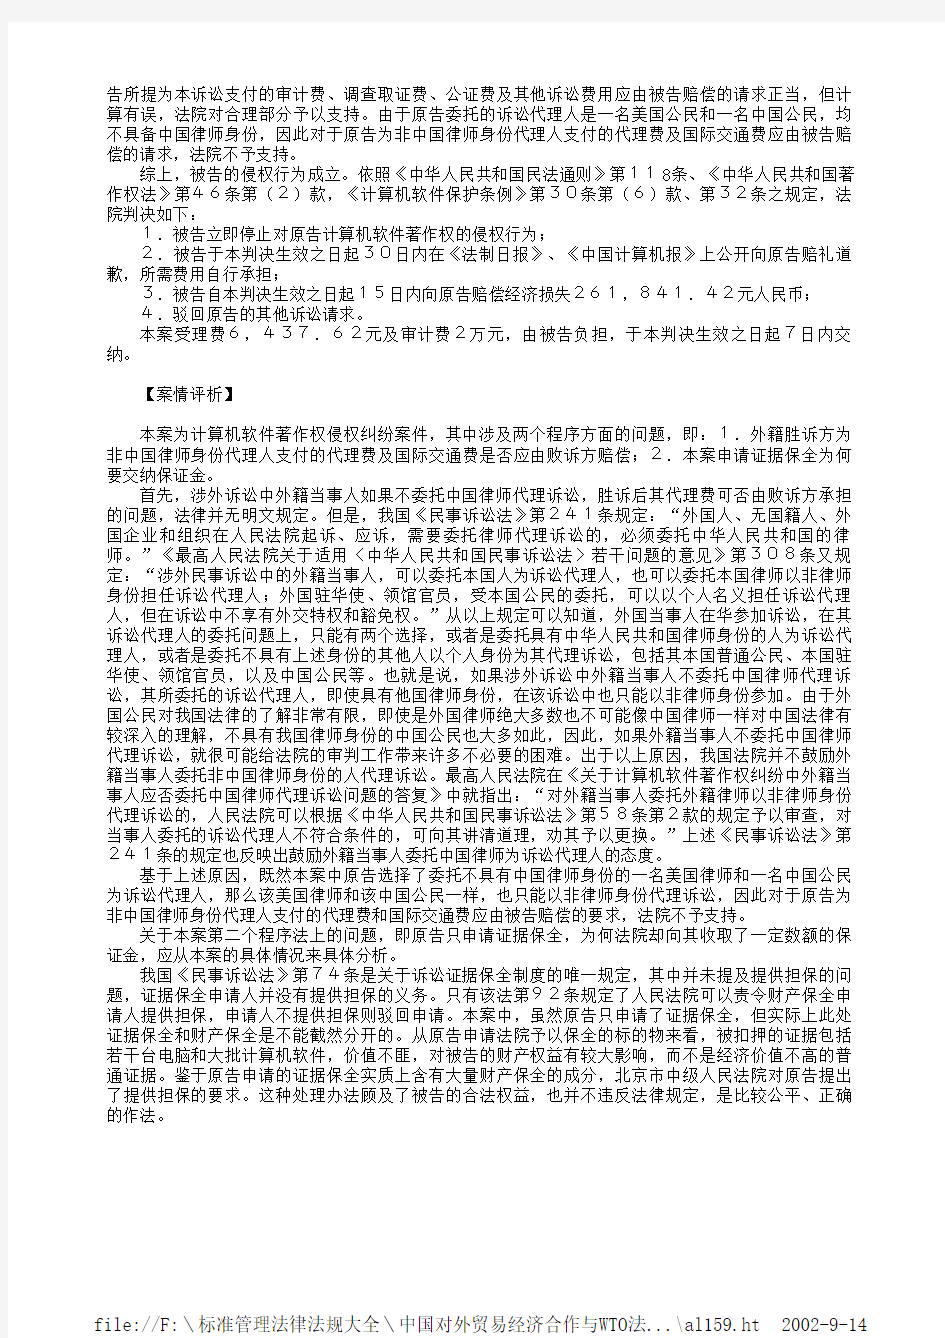 美国微软公司诉北京巨人电脑公司软件著作权侵权案